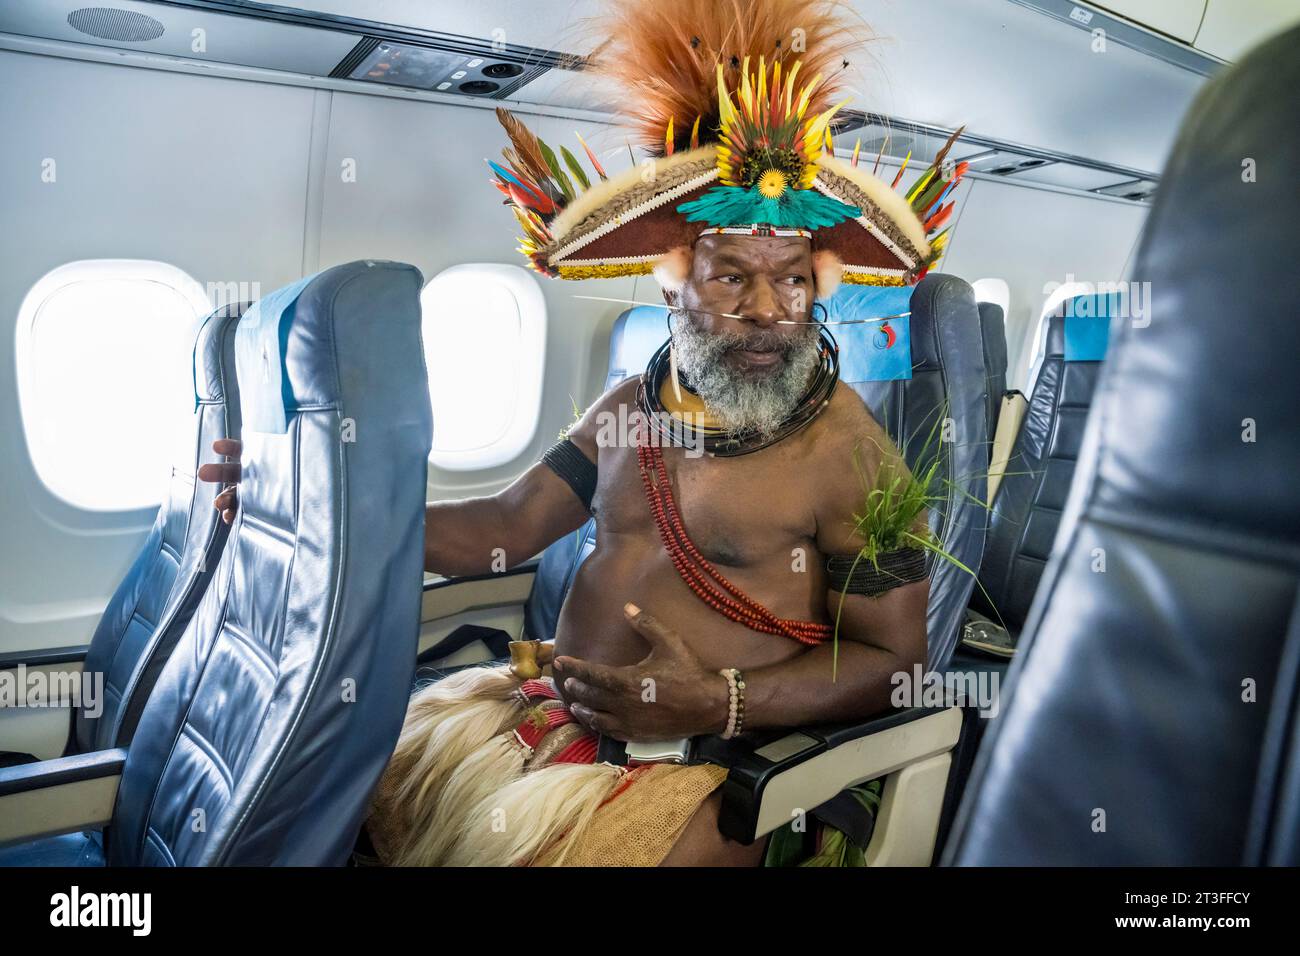 Papouasie-Nouvelle-Guinée, province de HeLa, Tari, chef Mundiya Kepanga dans un avion Air Niugini entre Tari et Port Moresby Banque D'Images